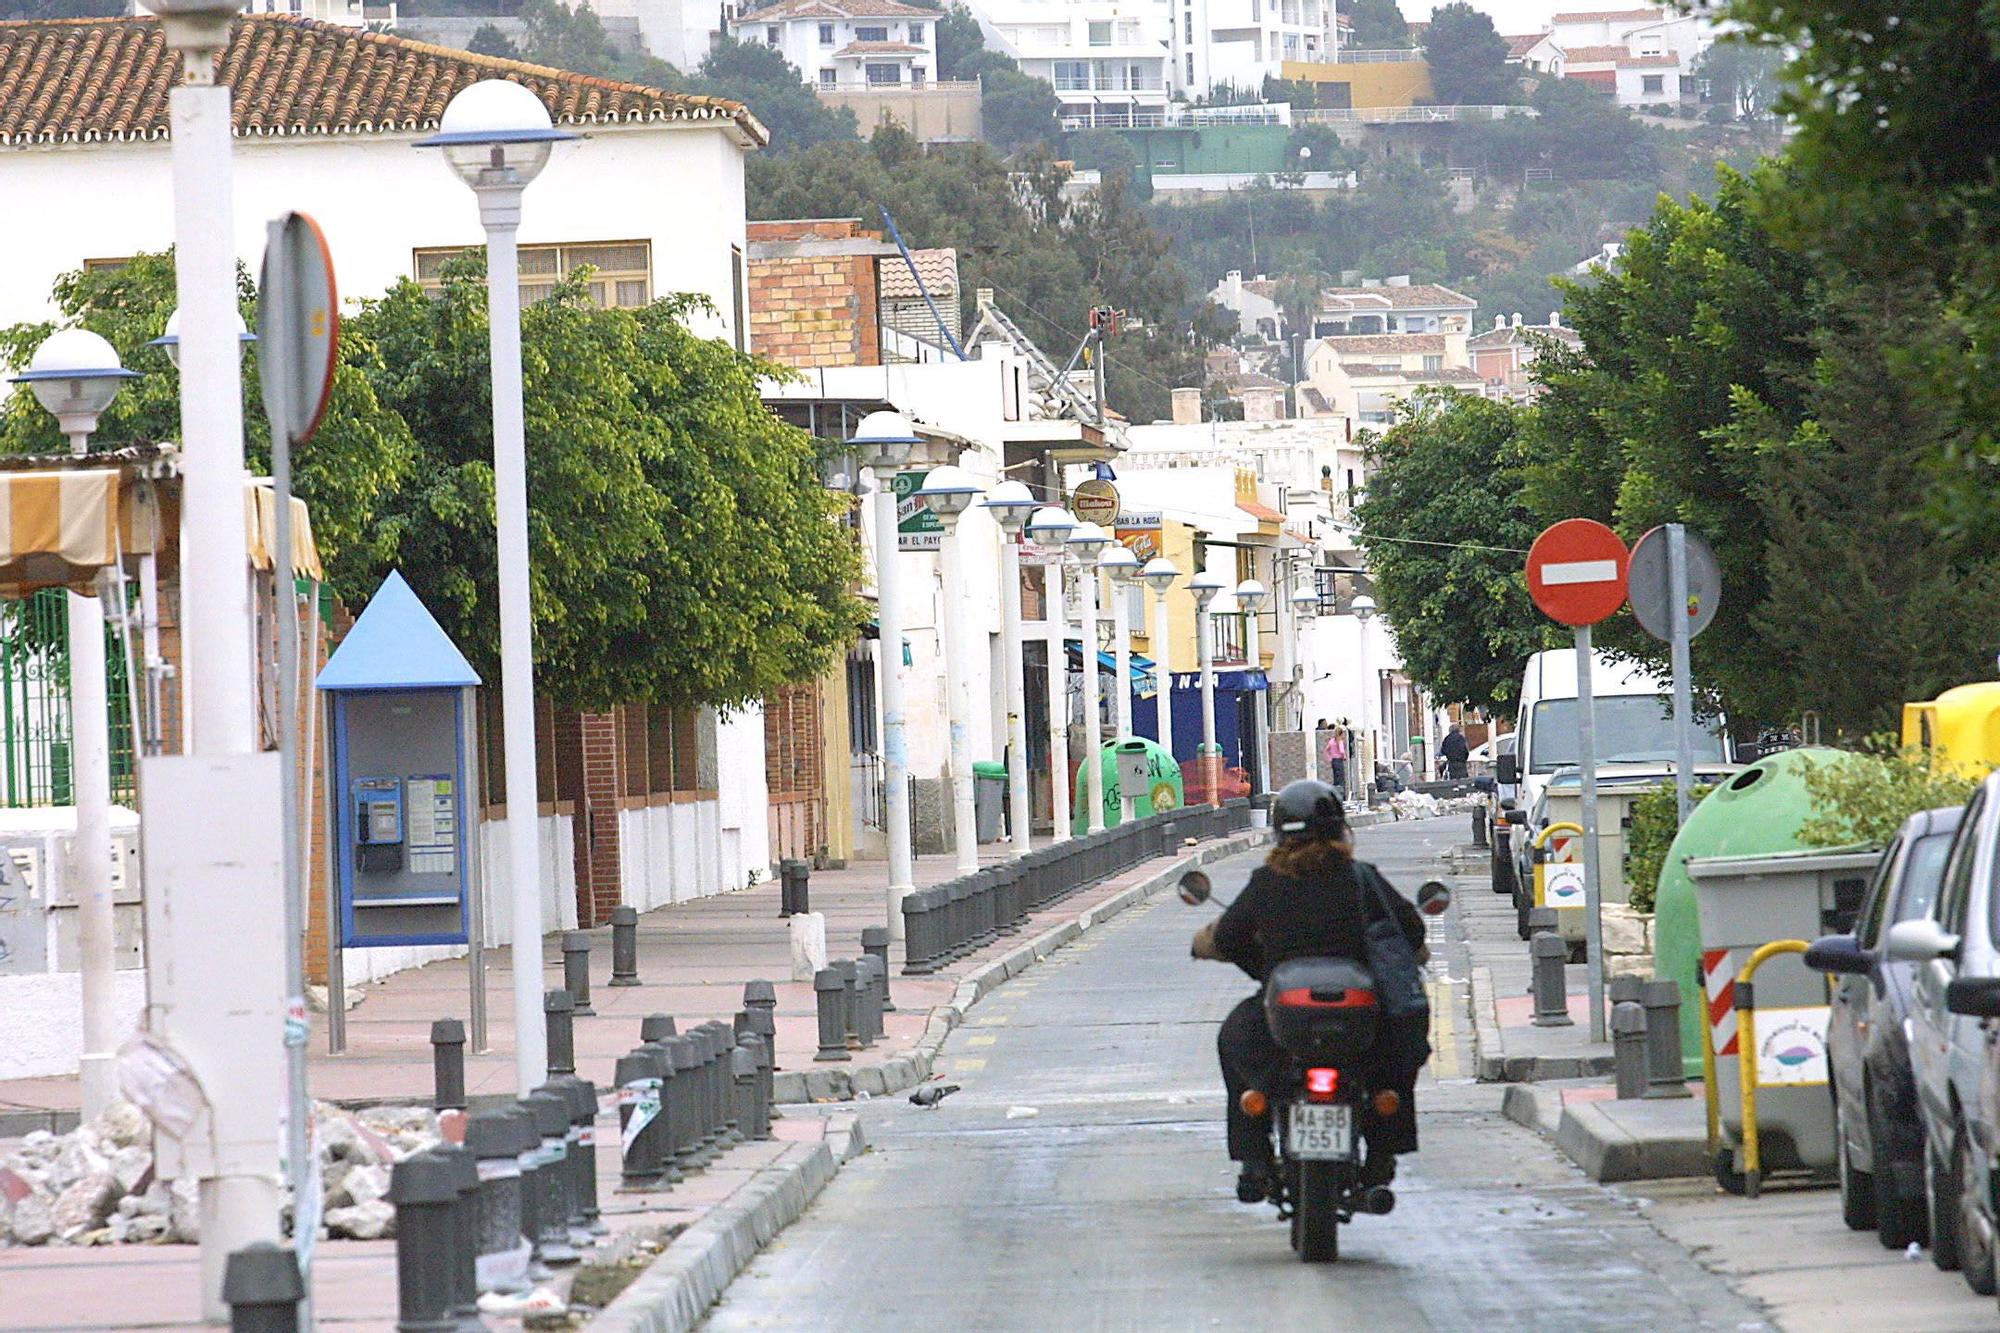 La calle Quitapenas-Banda del Mar, con una carretera de servicio junto al paseo marítimo.